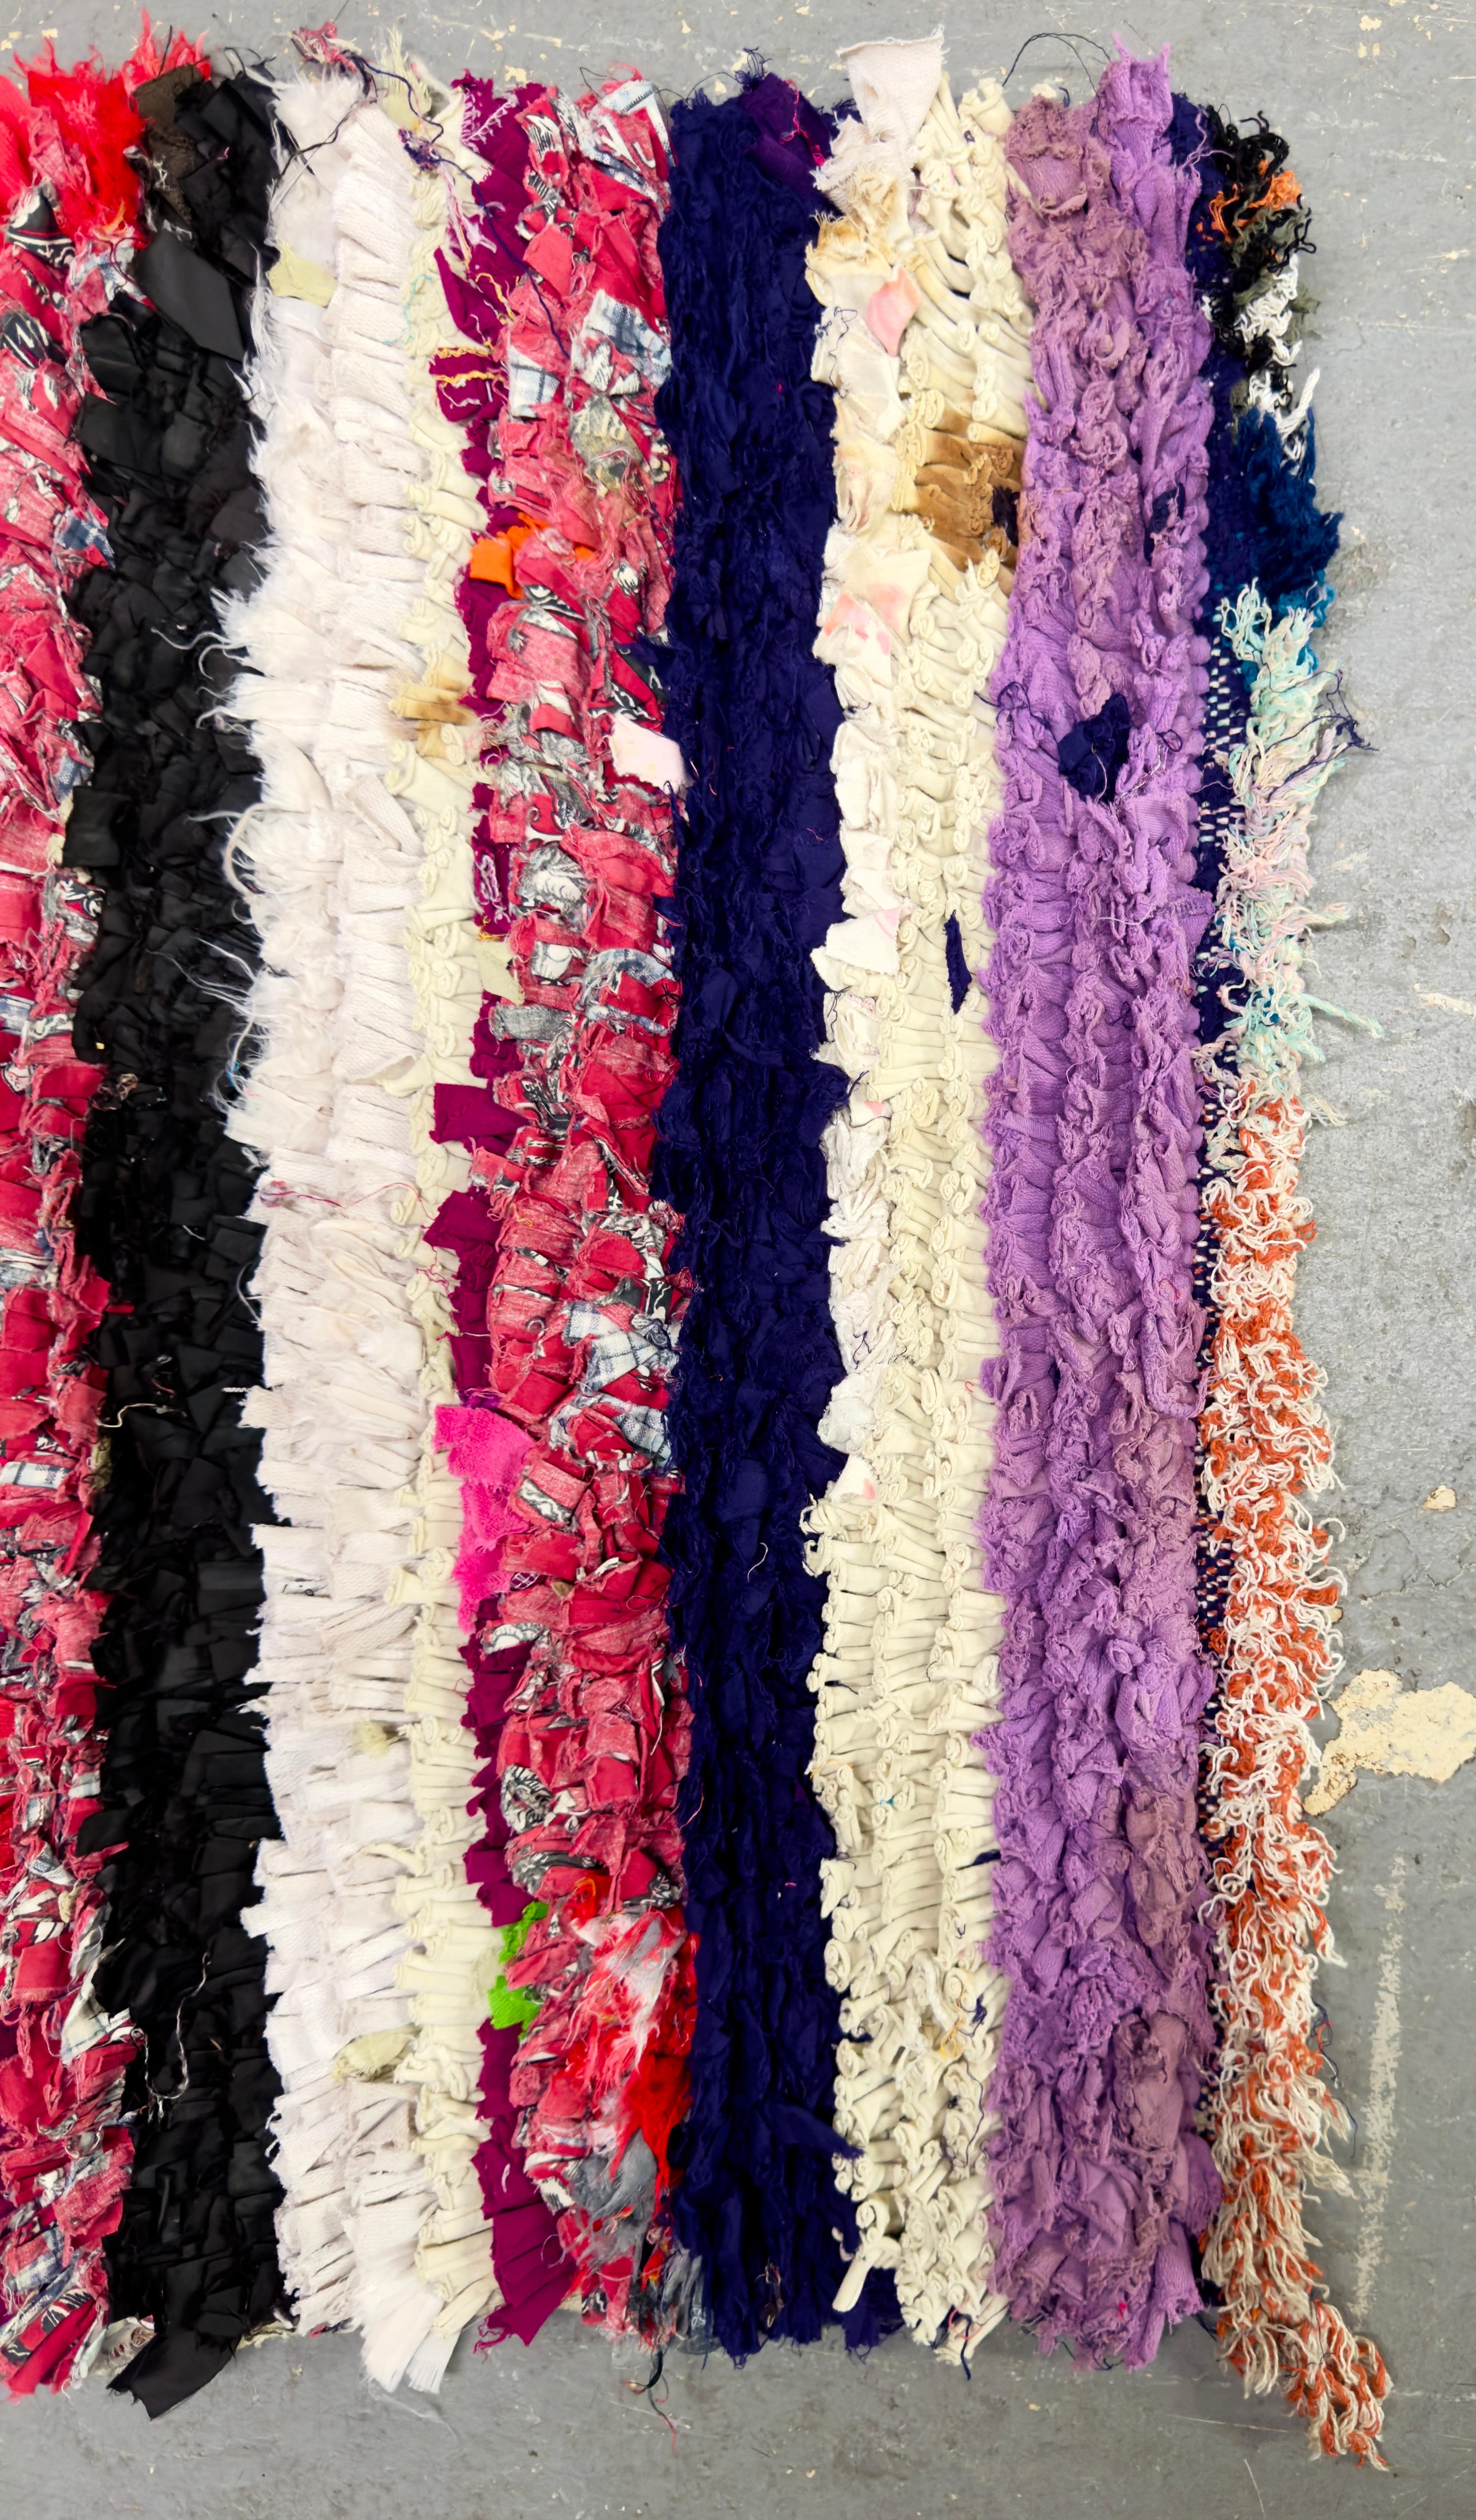 Un petit tapis ou une moquette Boho Chic à rayures multicolores marocaines.  Avec ses couleurs vives et joyeuses, le tapis est une pièce unique faite à la main à partir de chutes de tissus recyclés transformés en une belle œuvre d'art. Le petit